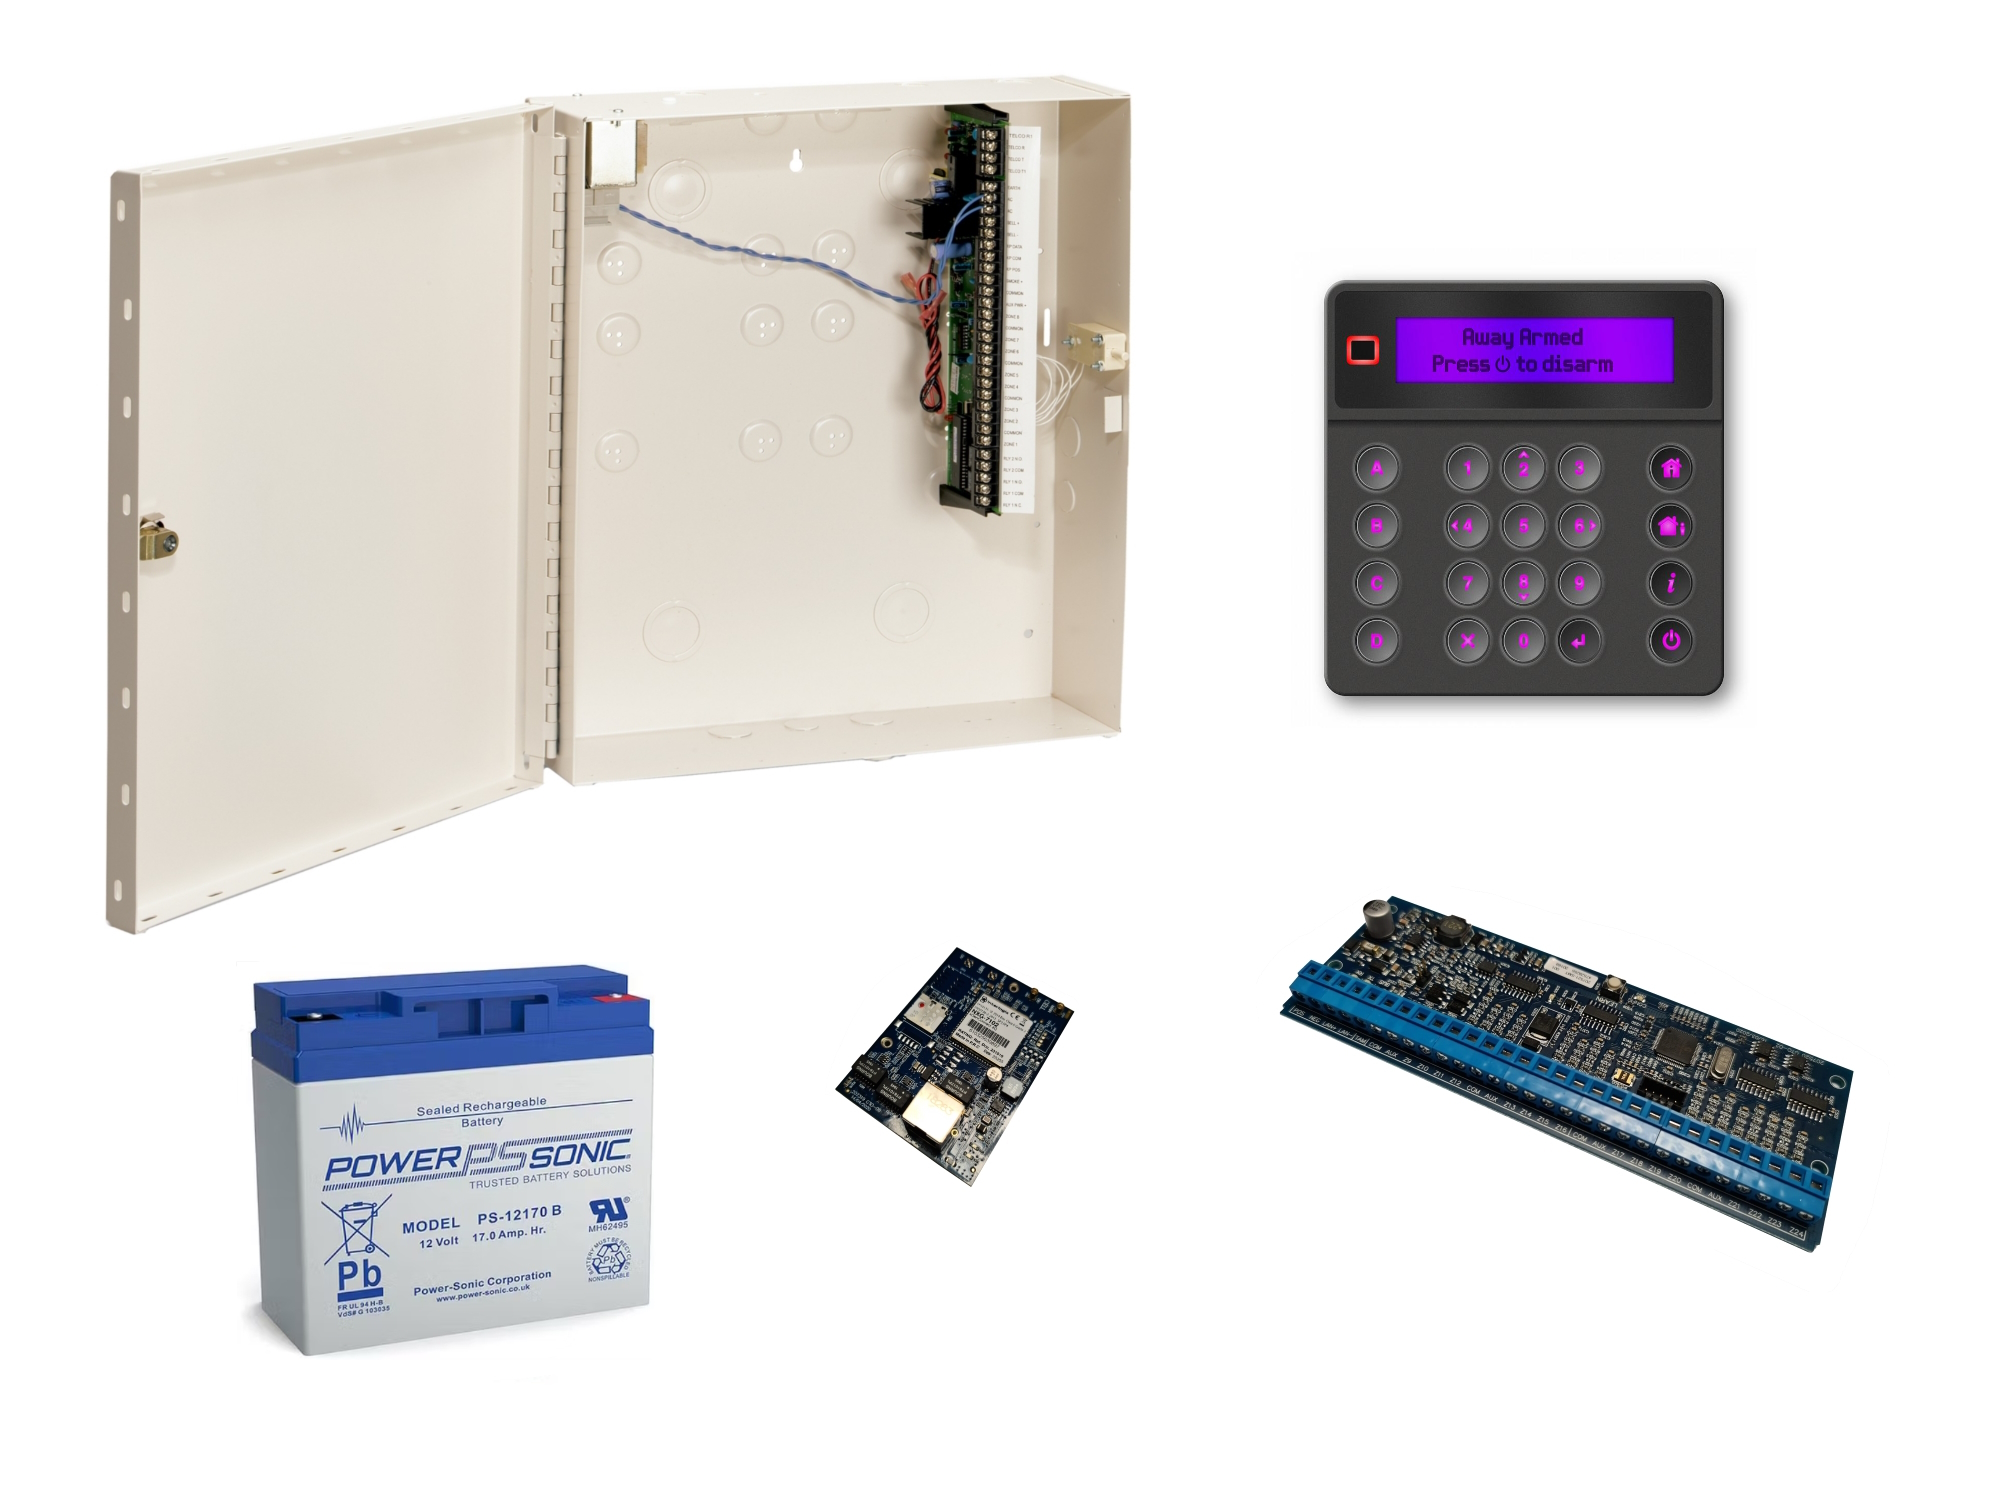 10000130 NXG Kit, IP centrale 8-48 zones, zwart LCD keypad, uitbreidingsmodule voor 16 bedrade zones, 4G modem + antenne + SIM kaart, batterij